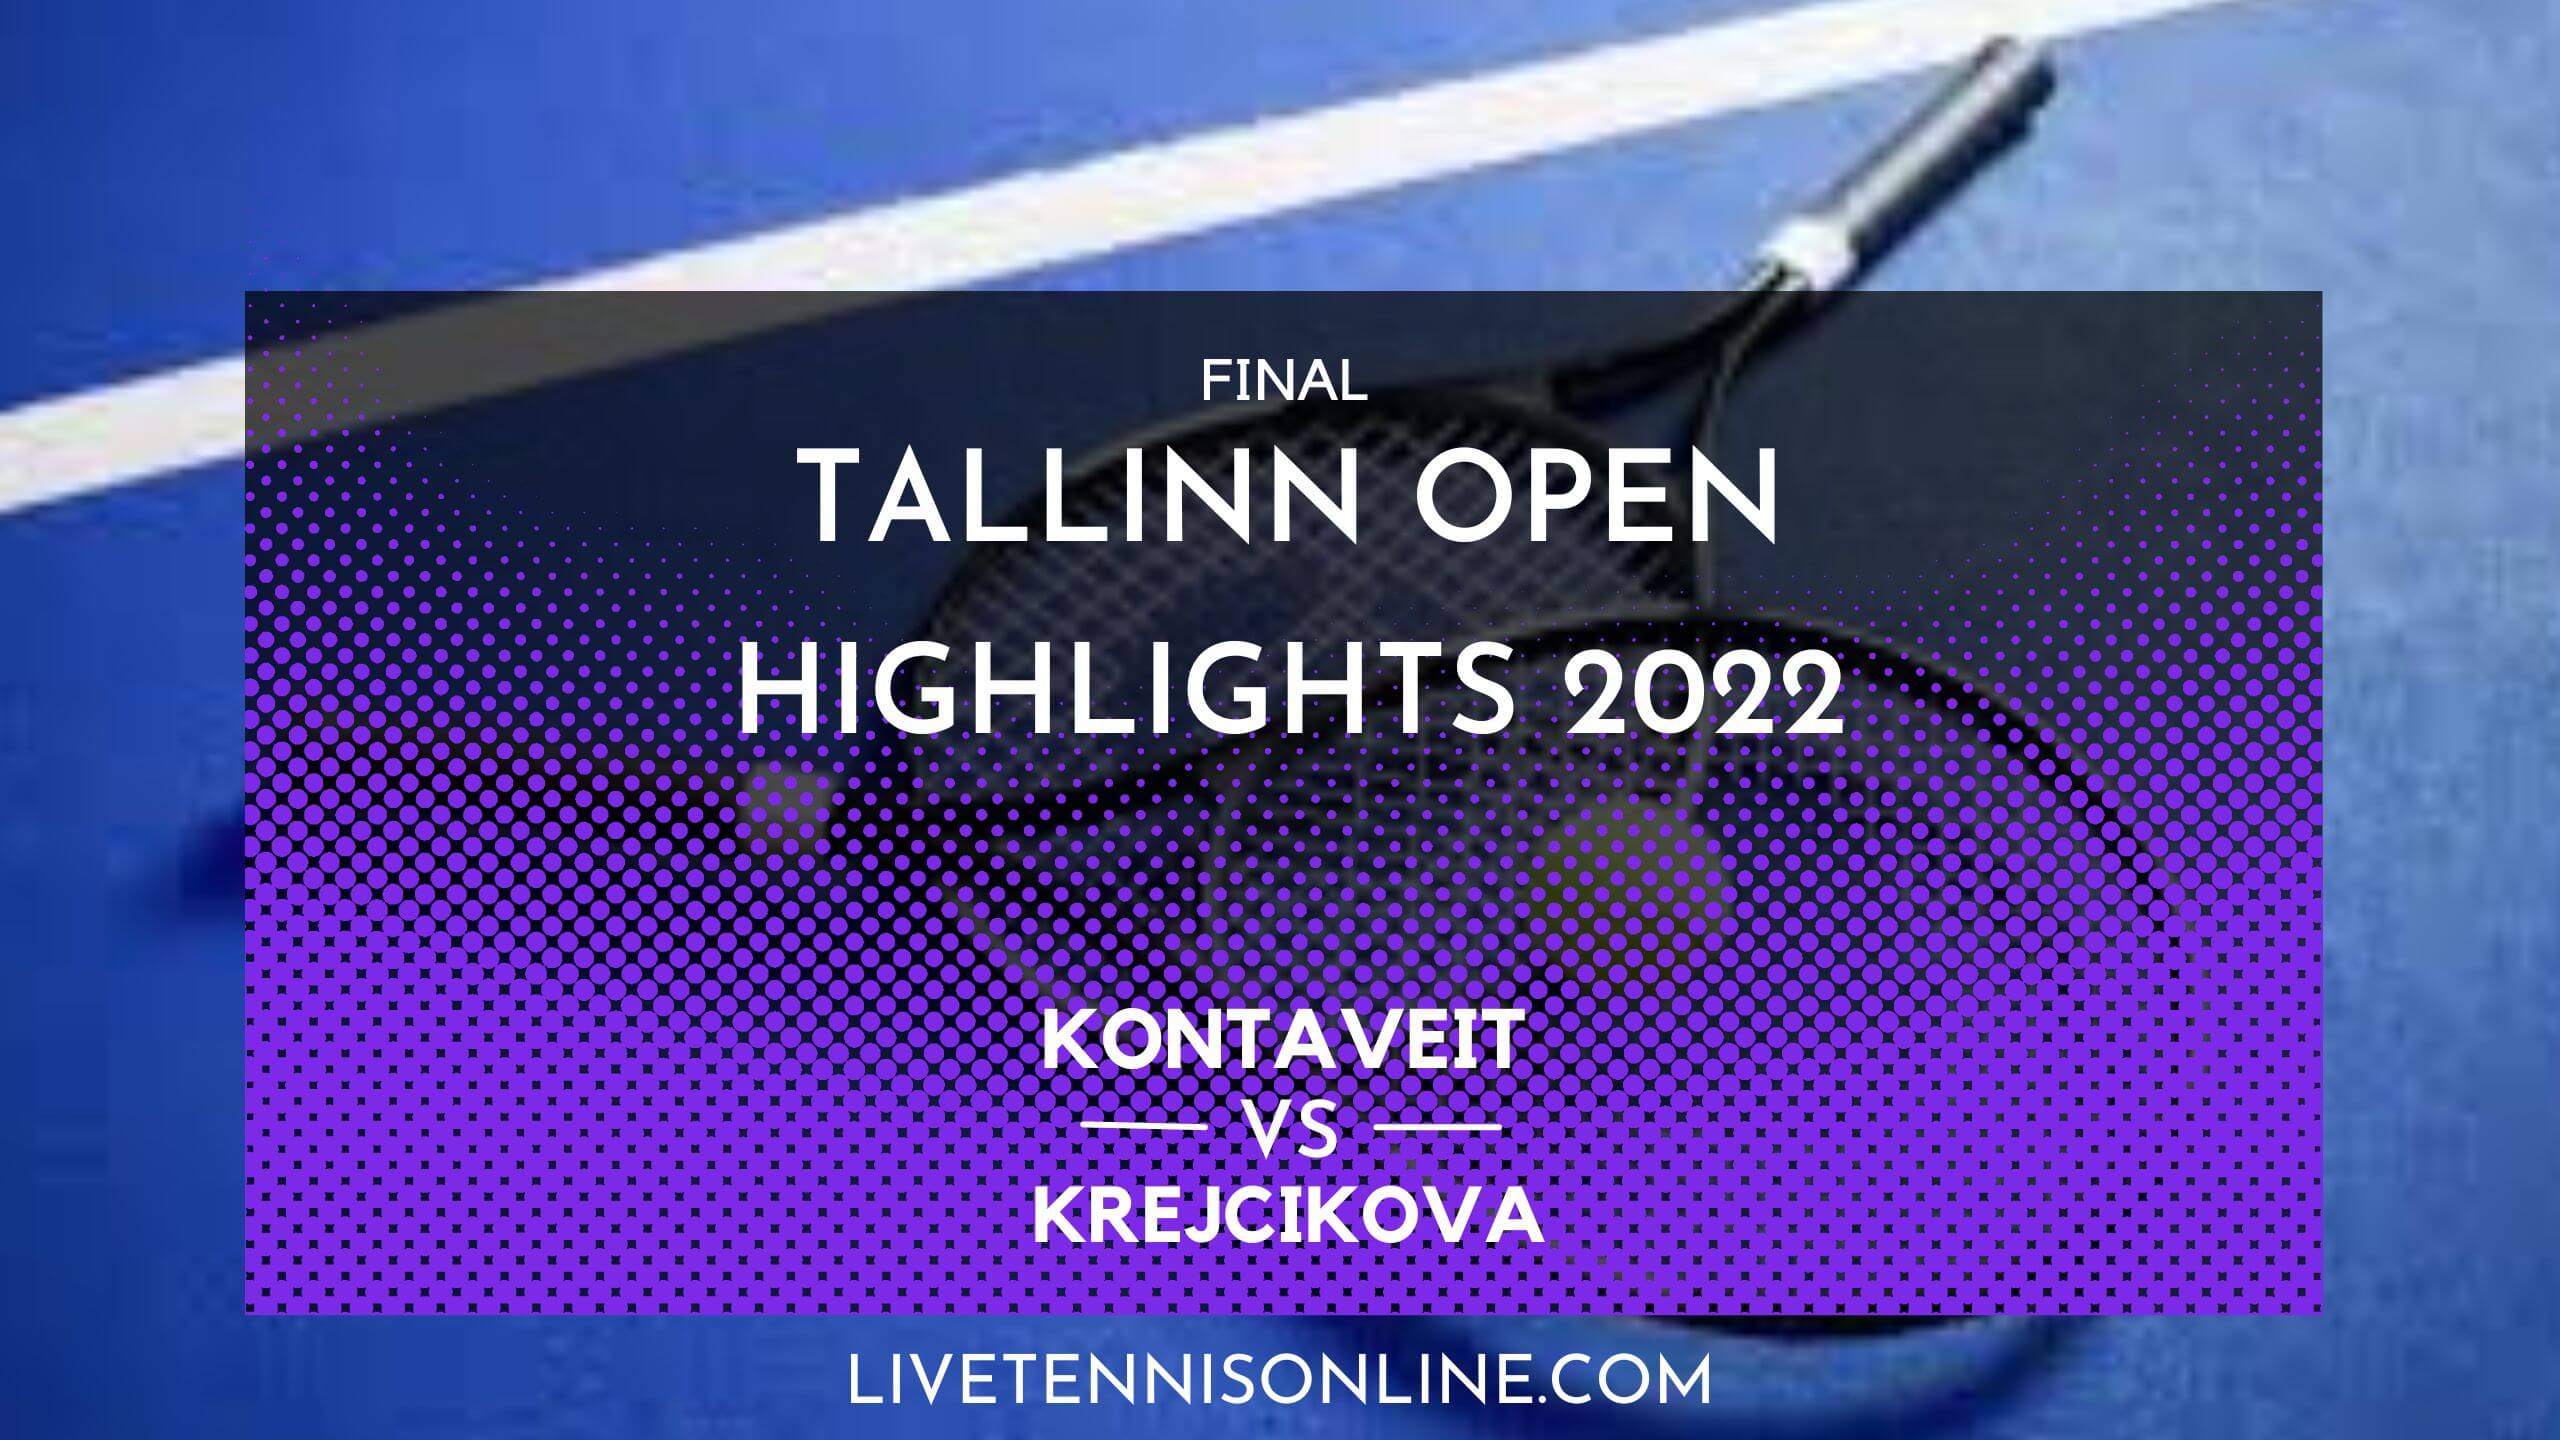 Kontaveit Vs Krejcikova Final Highlights 2022 Tallinn Open